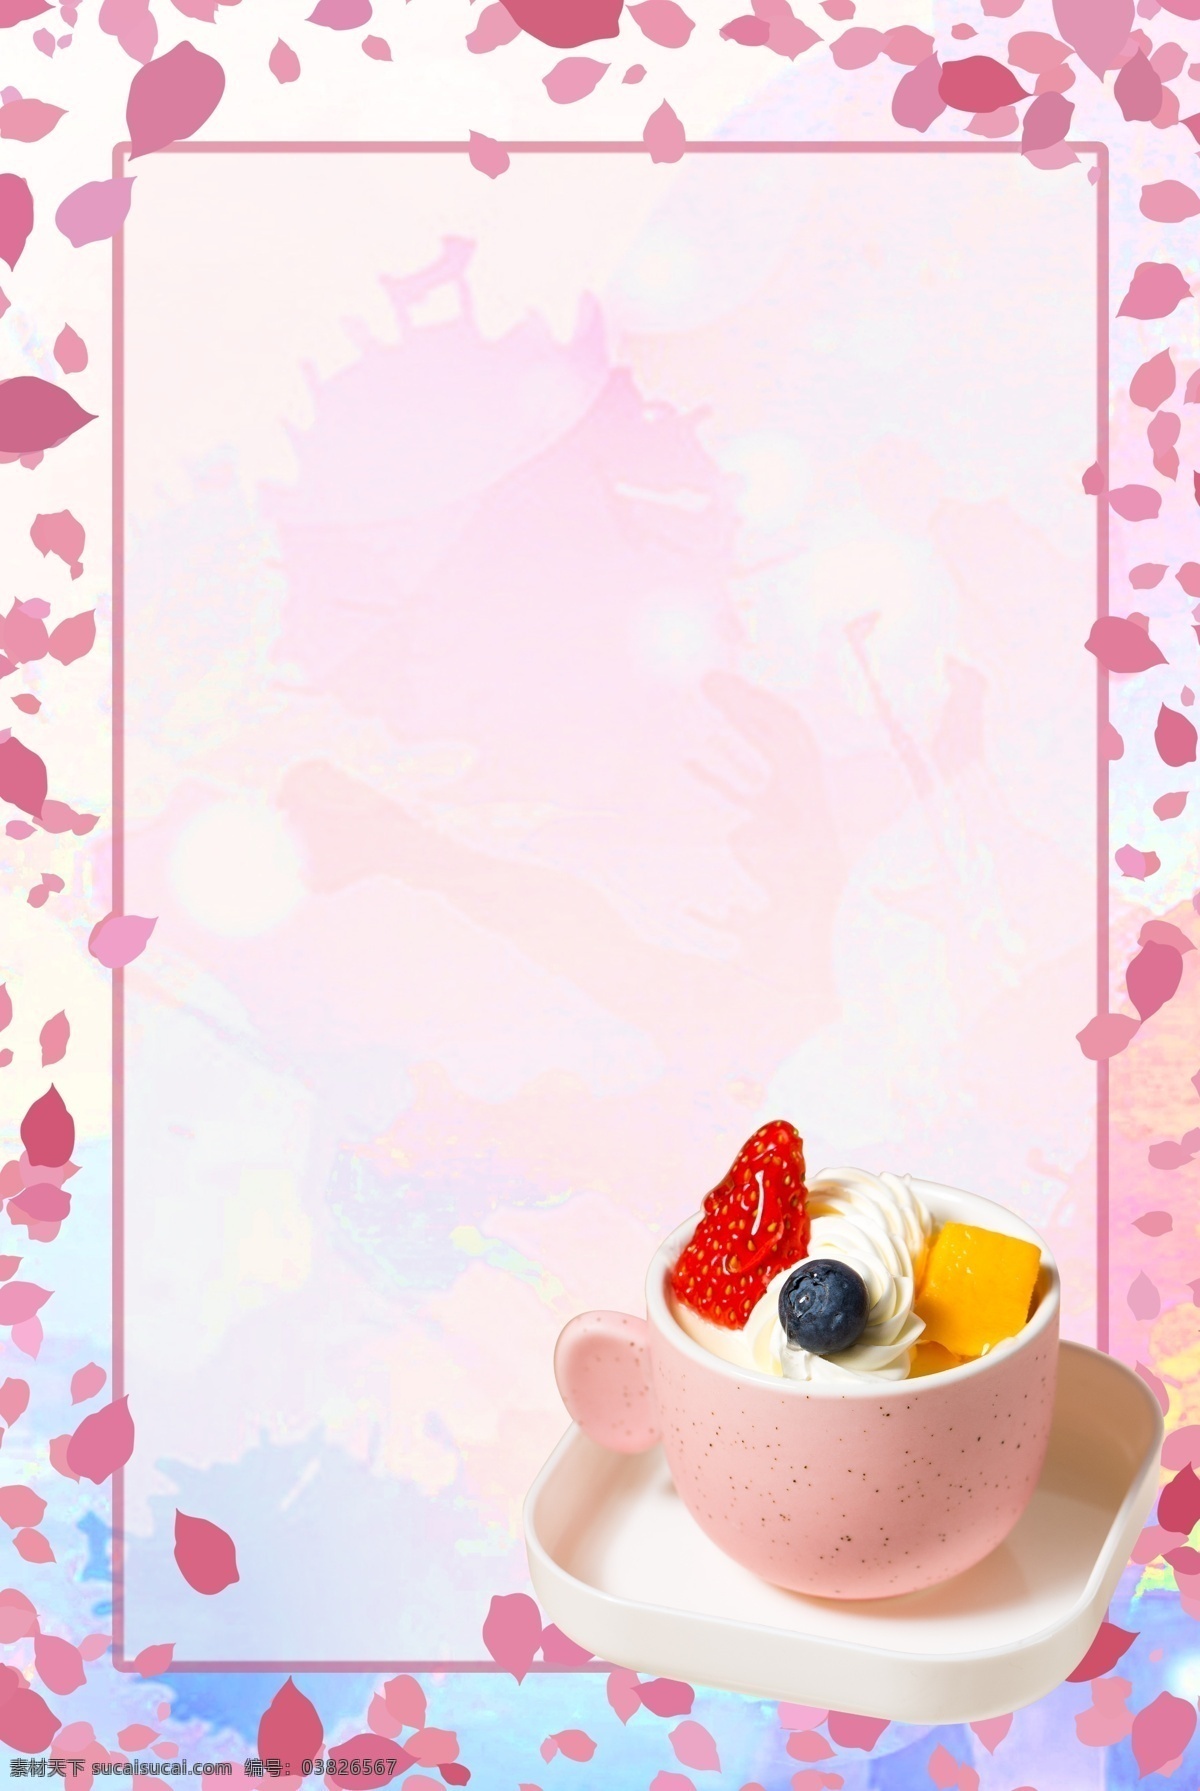 粉色 夏季 冰淇淋 背景 唯美 美味冰淇淋 冰淇淋球 卡通手绘 手绘彩铅 卡通 彩铅 手绘